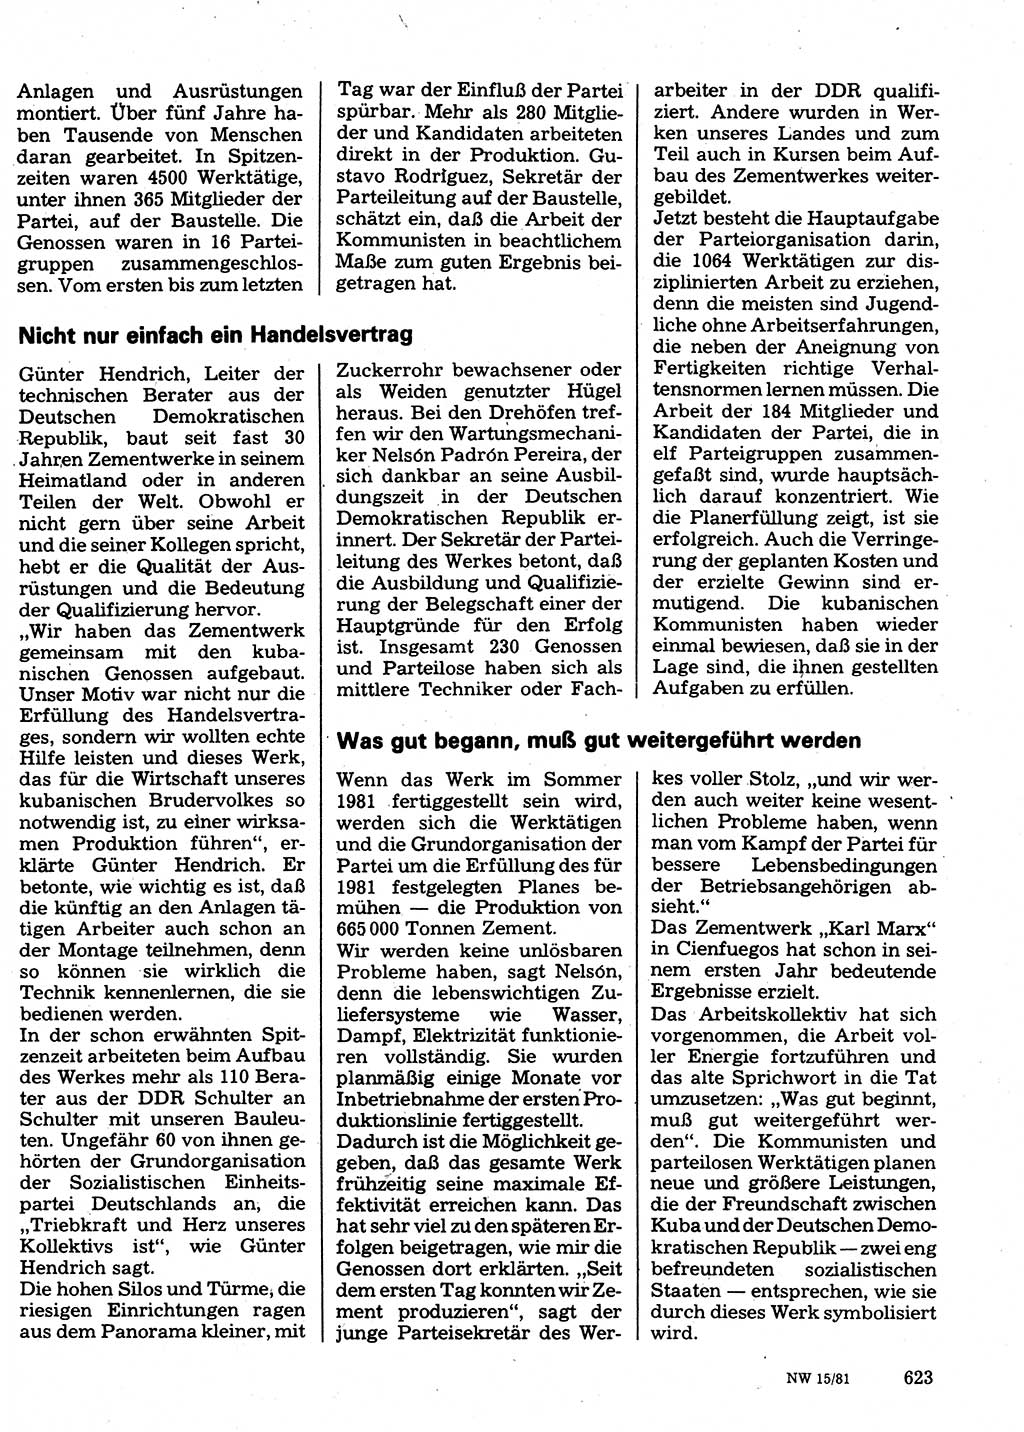 Neuer Weg (NW), Organ des Zentralkomitees (ZK) der SED (Sozialistische Einheitspartei Deutschlands) für Fragen des Parteilebens, 36. Jahrgang [Deutsche Demokratische Republik (DDR)] 1981, Seite 623 (NW ZK SED DDR 1981, S. 623)